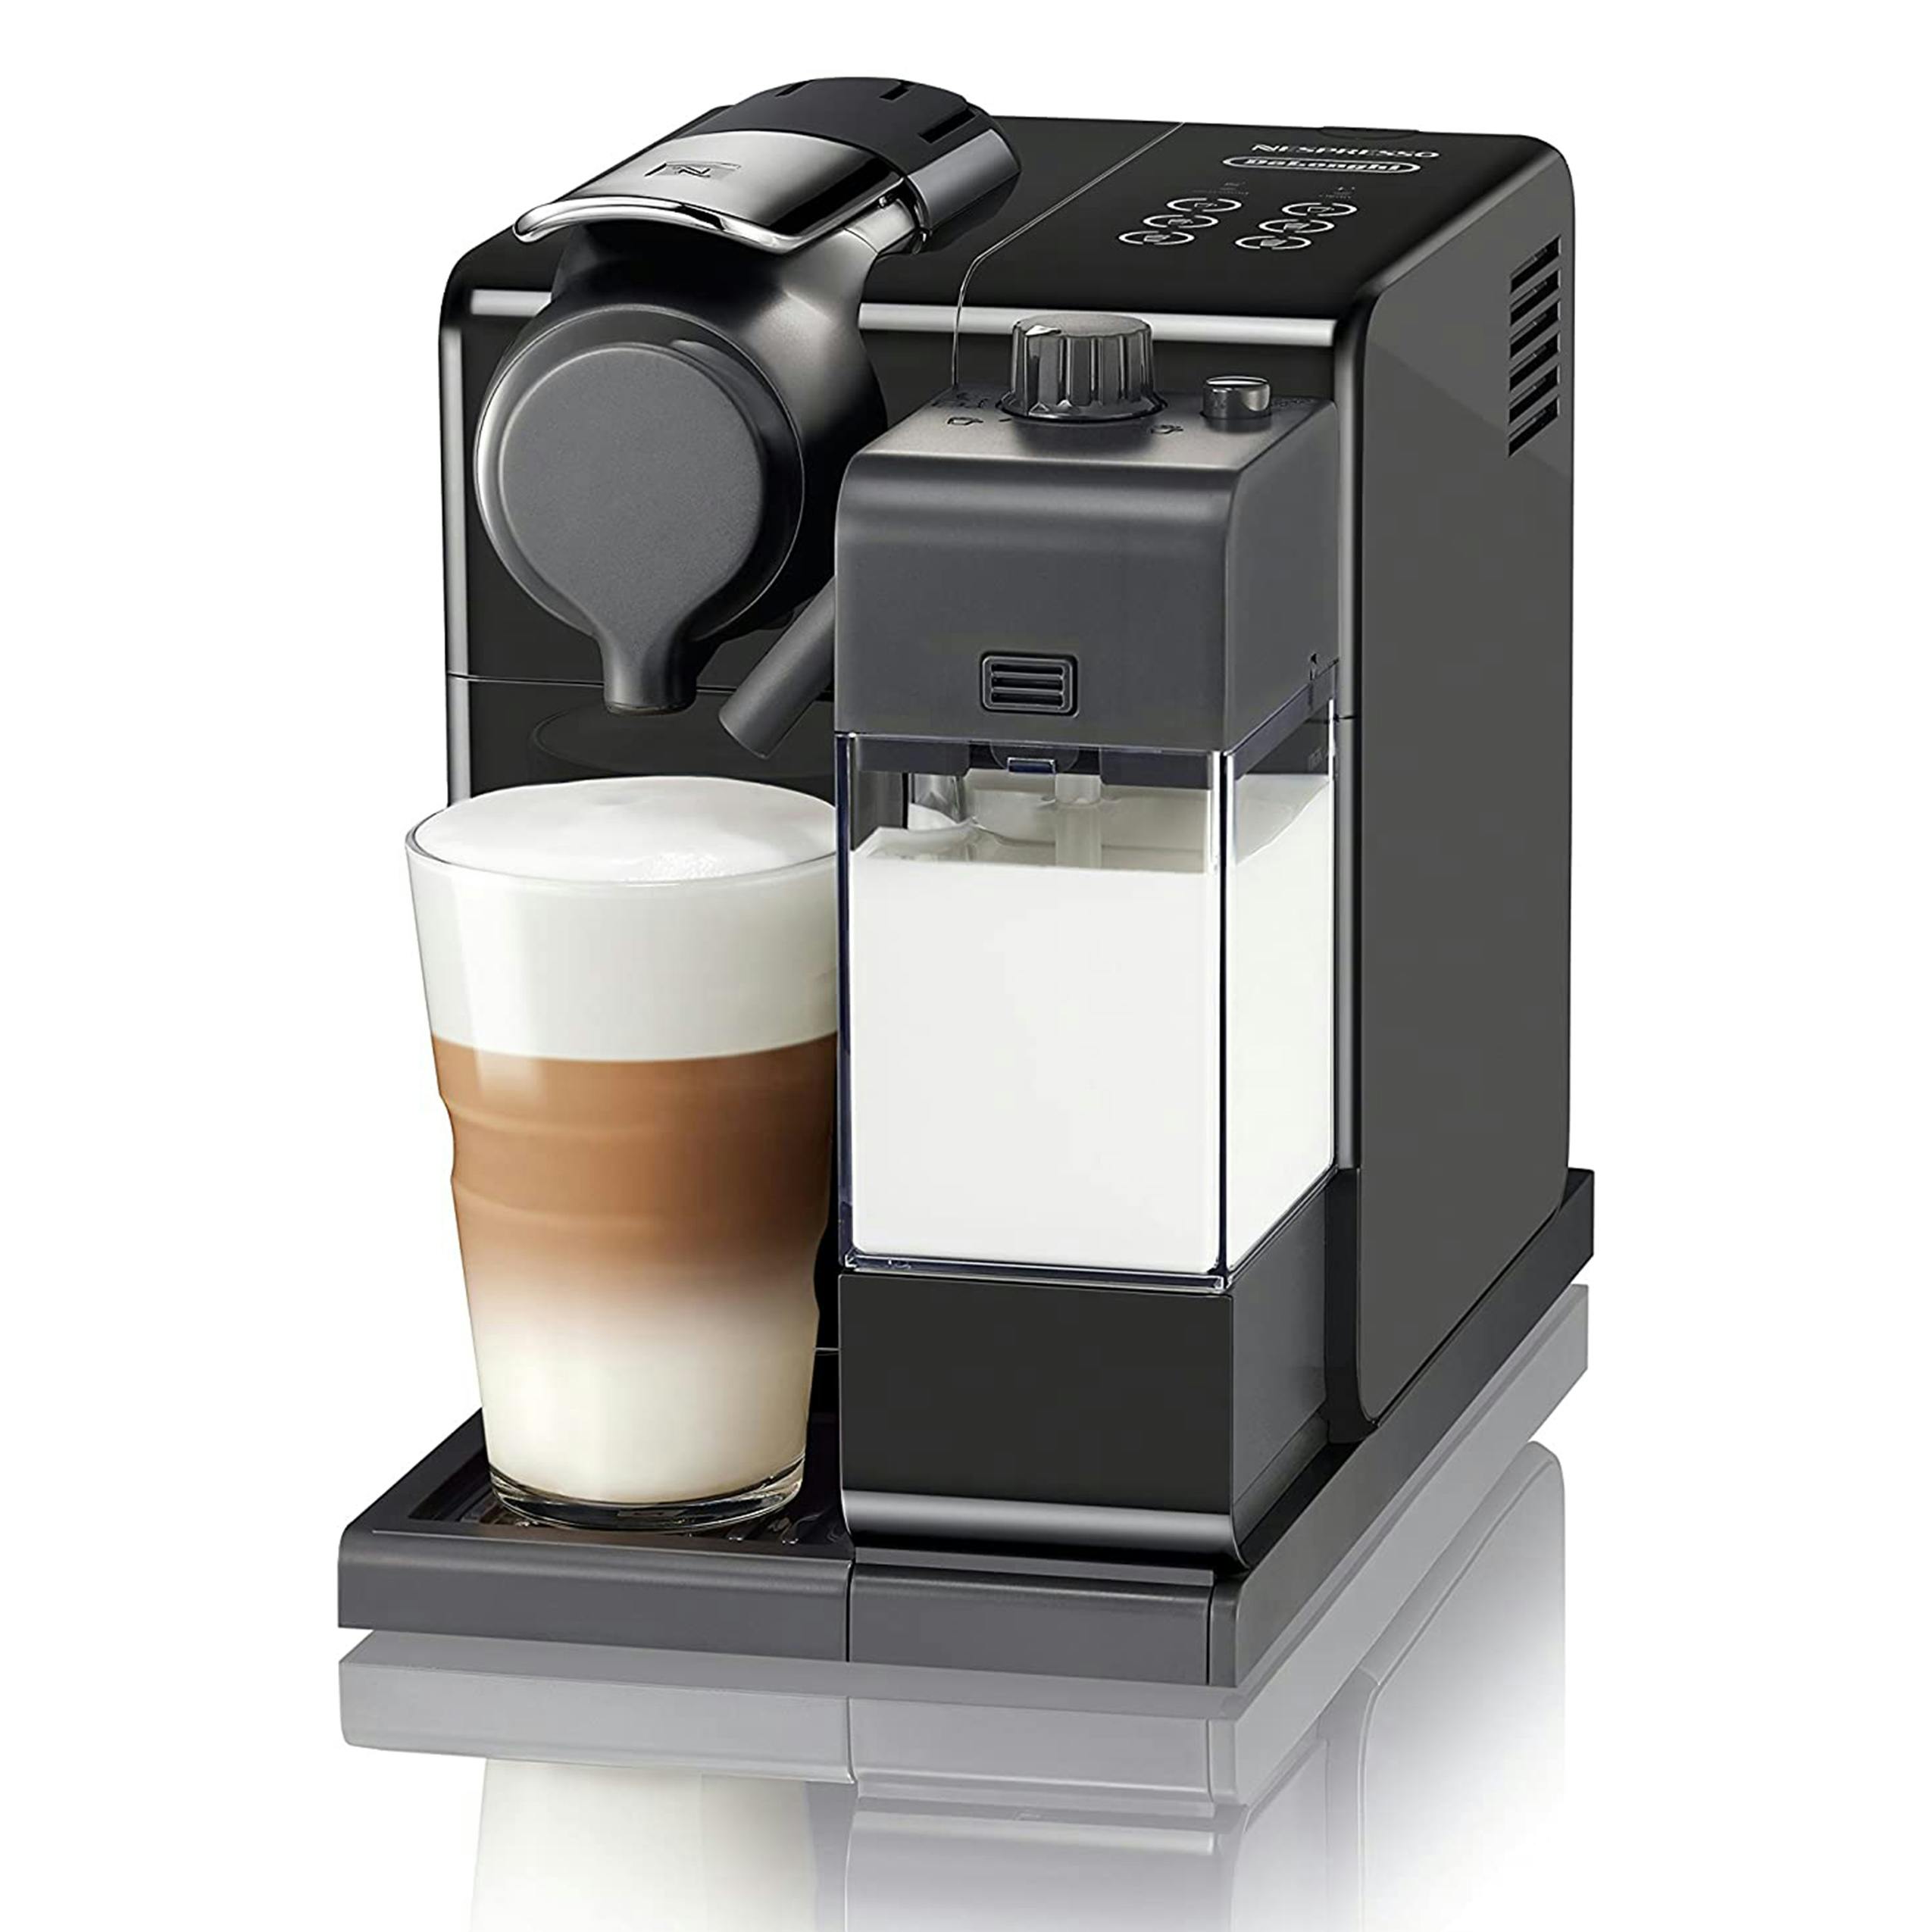 Nespresso latissima touch espresso machine